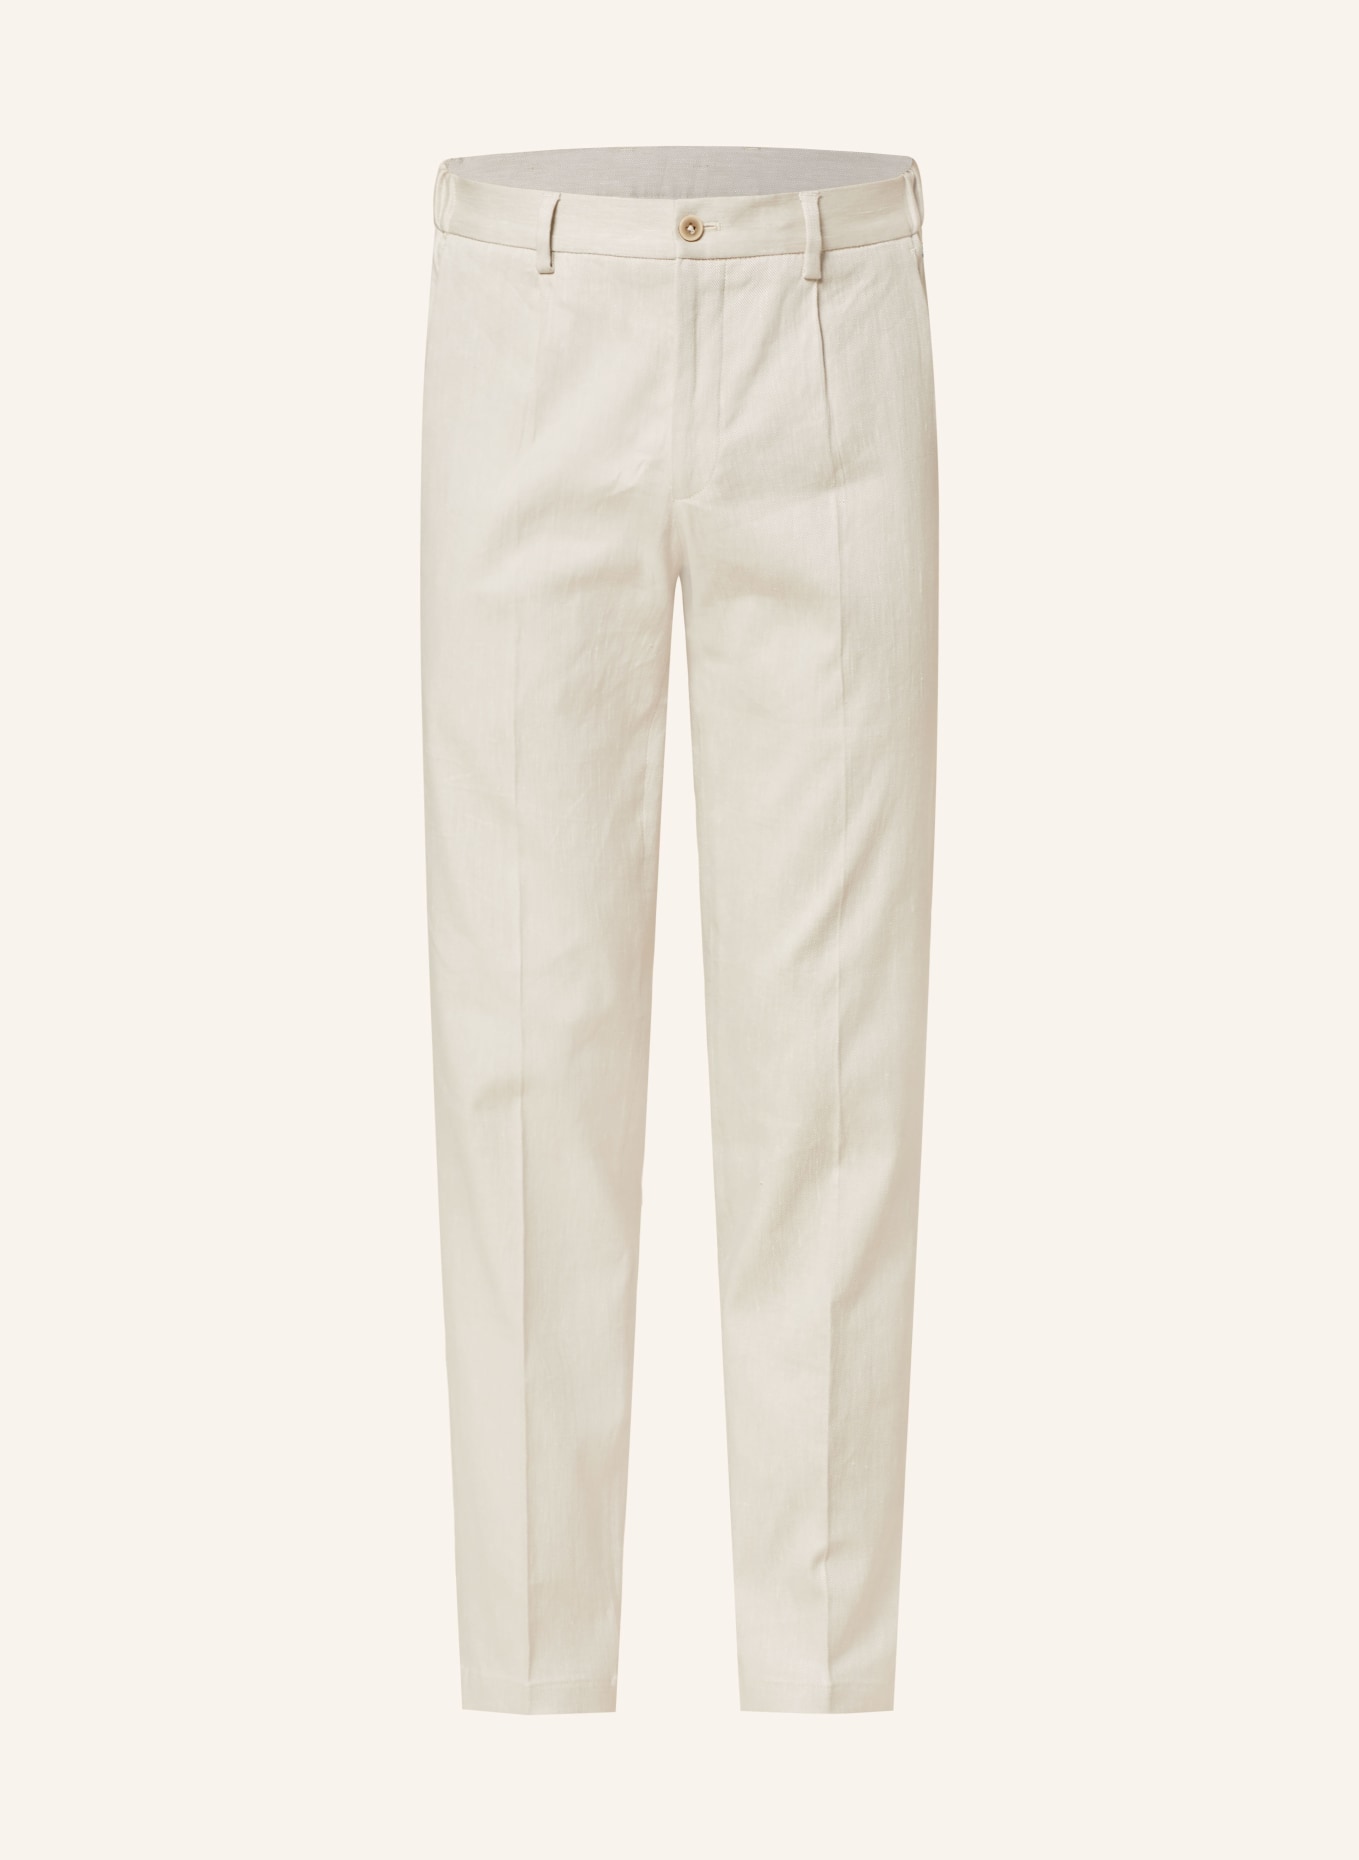 PAUL Suit trousers with linen, Color: 200 LIGHT BEIGE (Image 1)